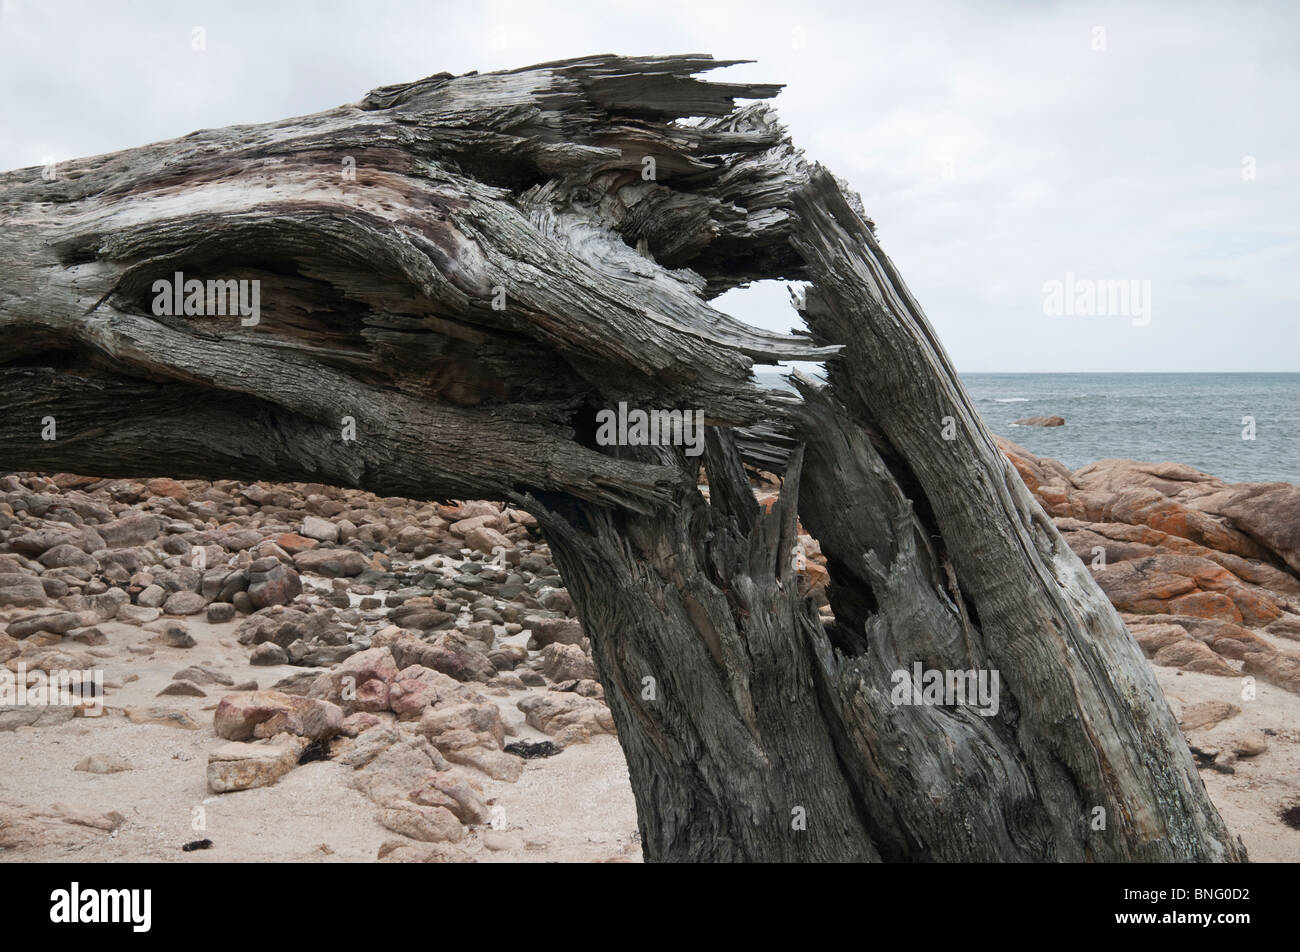 Broken tree trunk on a dead tree along the Western Australian coastline Stock Photo